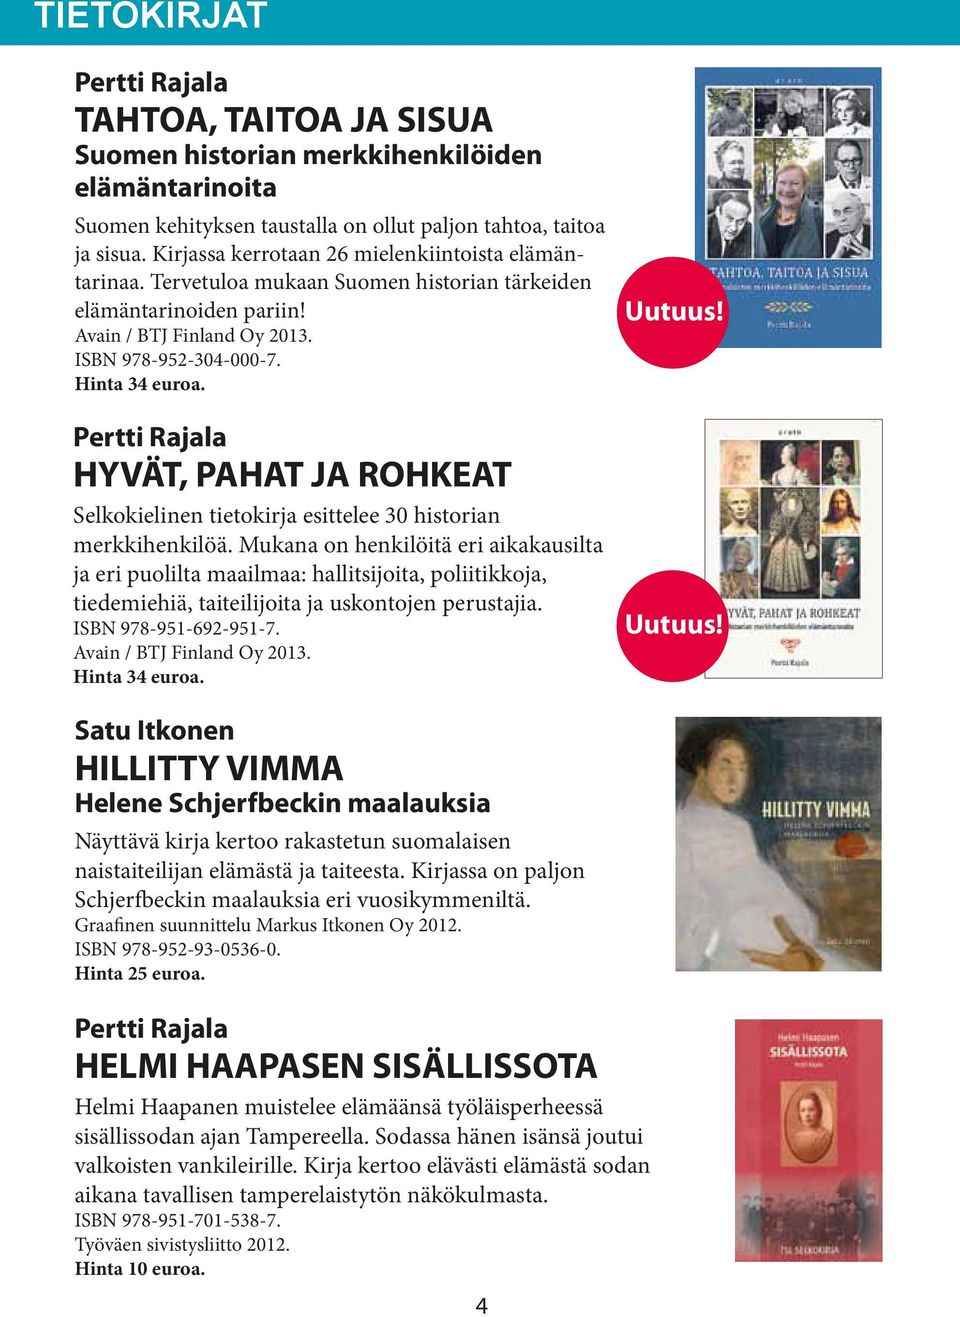 Pertti Rajala HYVÄT, PAHAT JA ROHKEAT Selkokielinen tietokirja esittelee 30 historian merkkihenkilöä.